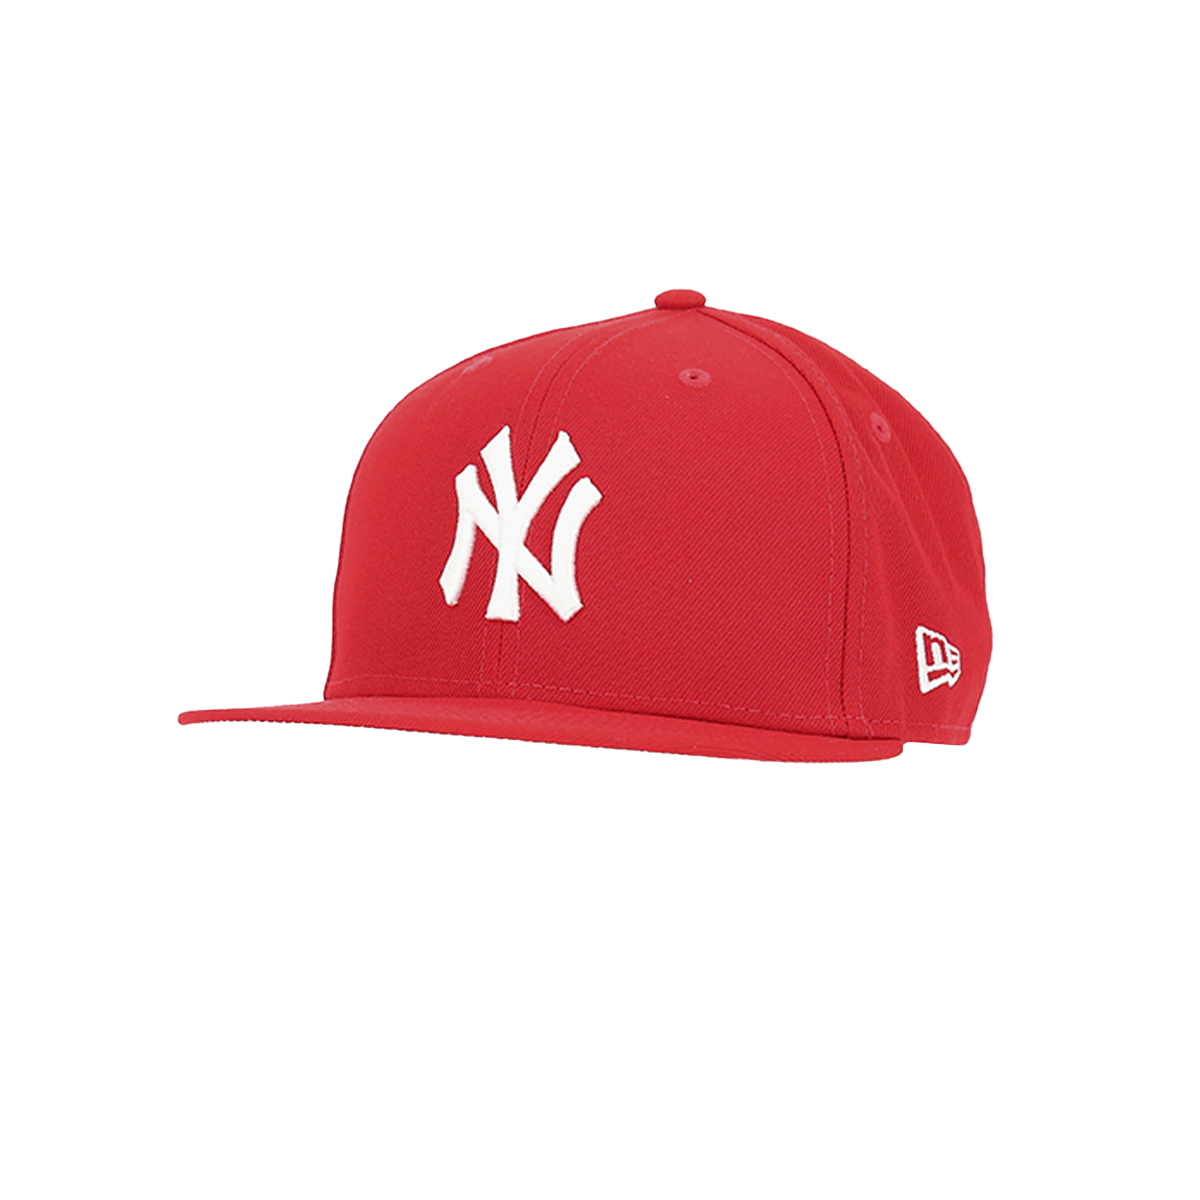 Jockey New Era Mlb 950 New York Yankees Hombre Rojo –